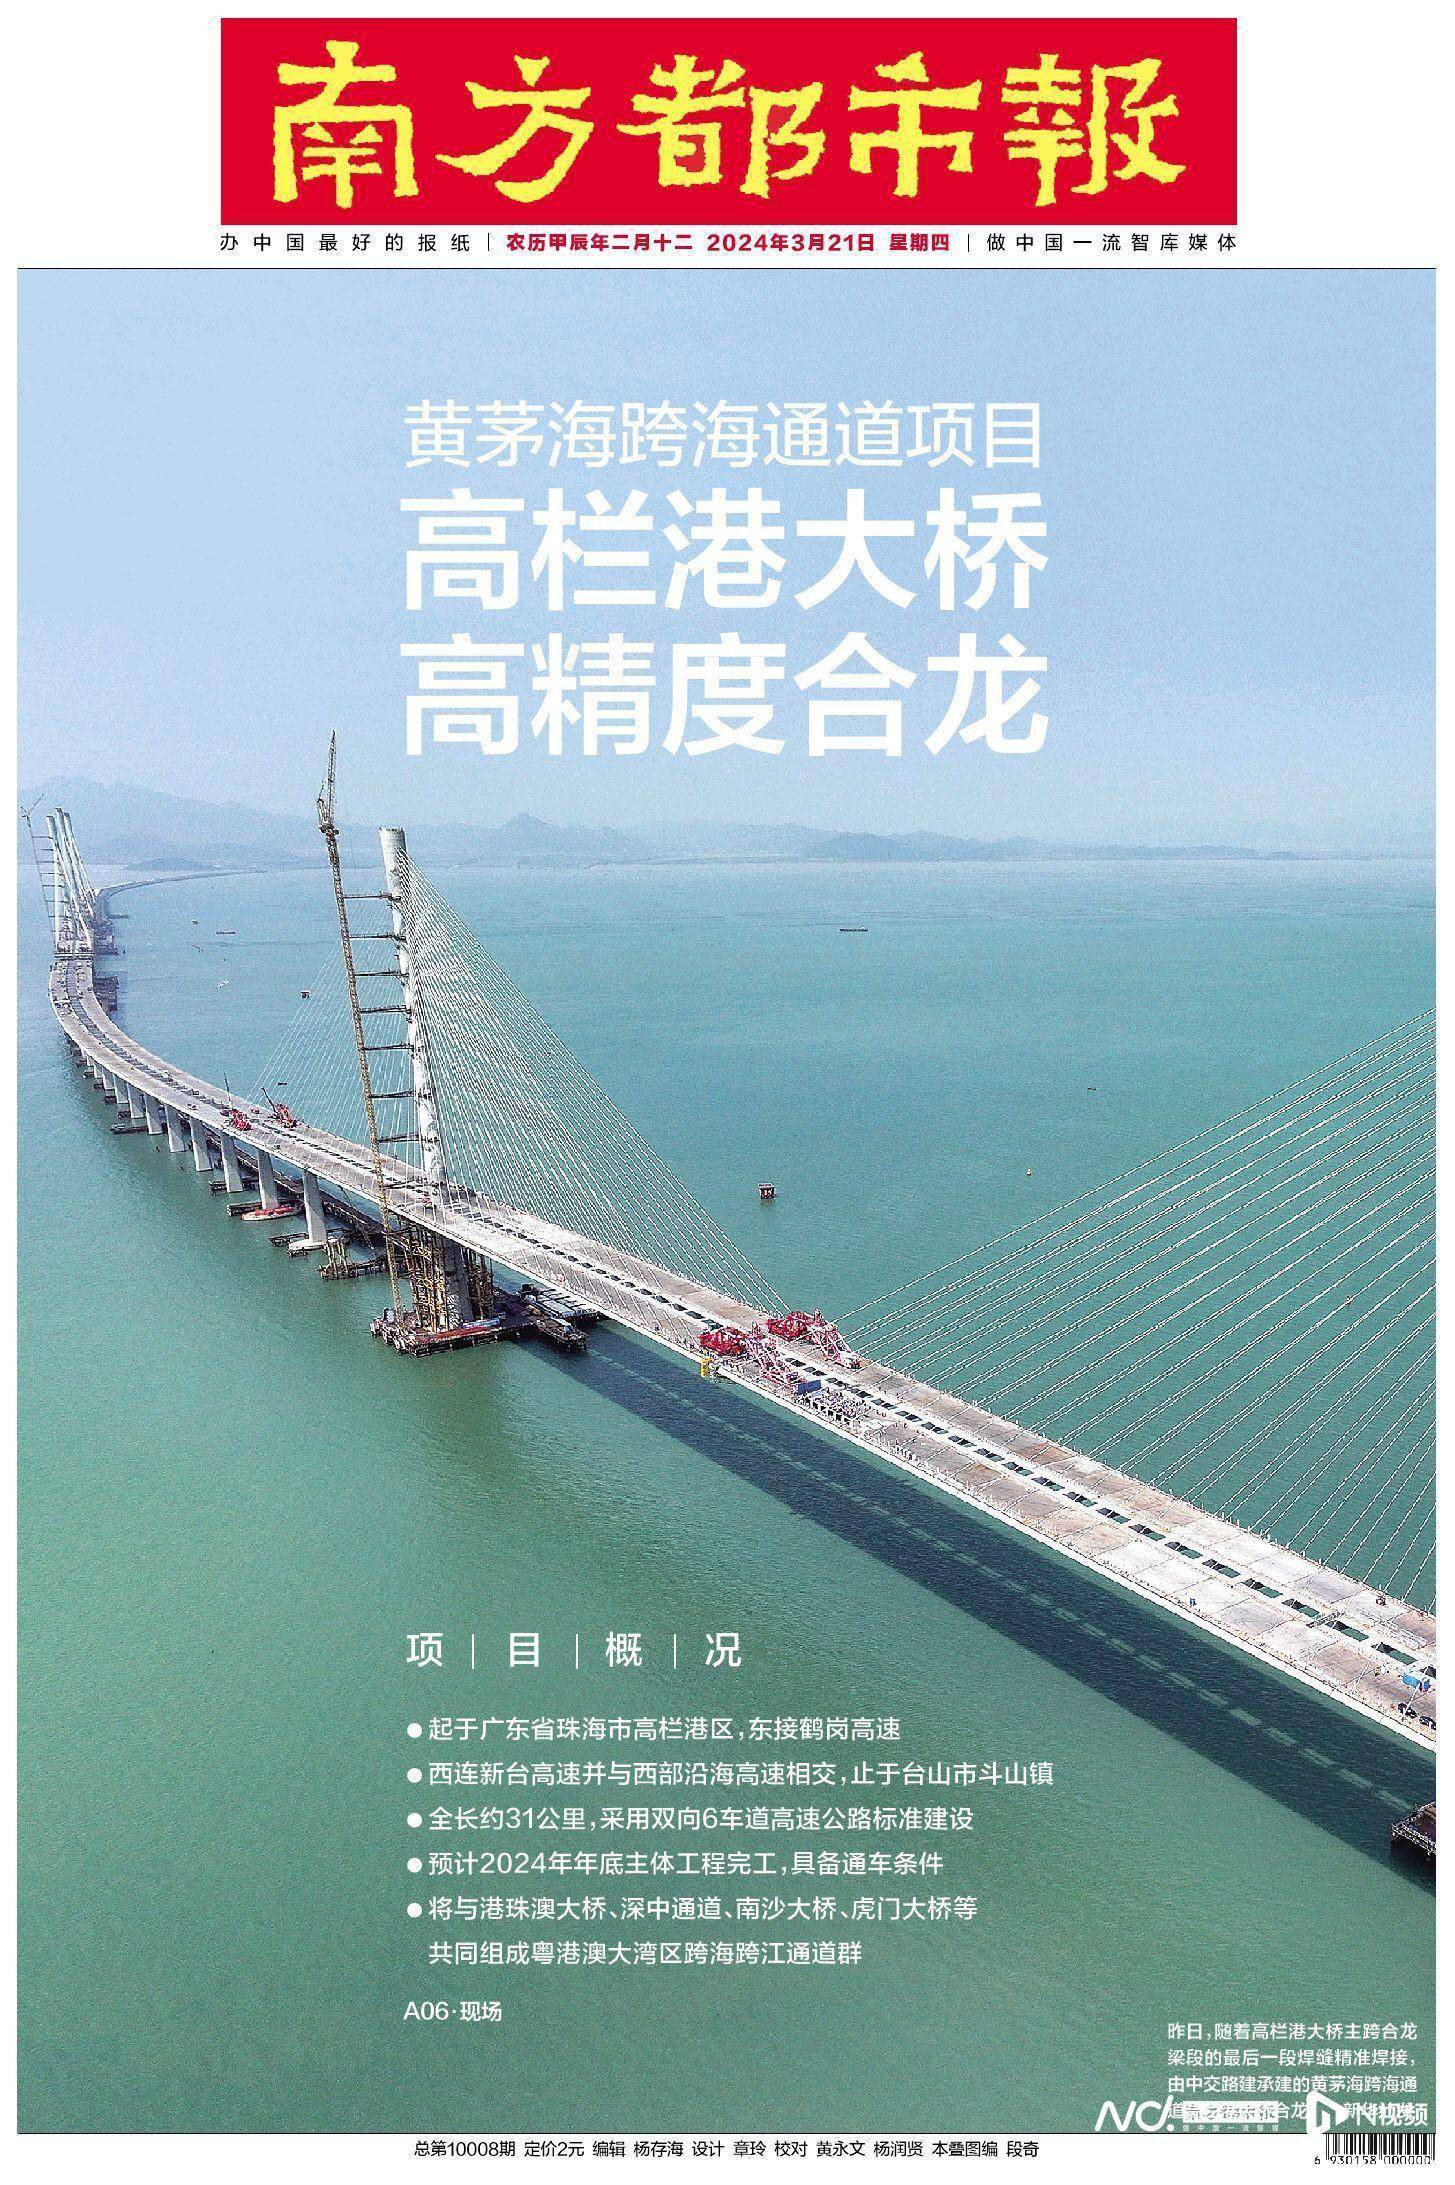 头版头条黄茅海跨海通道项目高栏港大桥高精度合龙